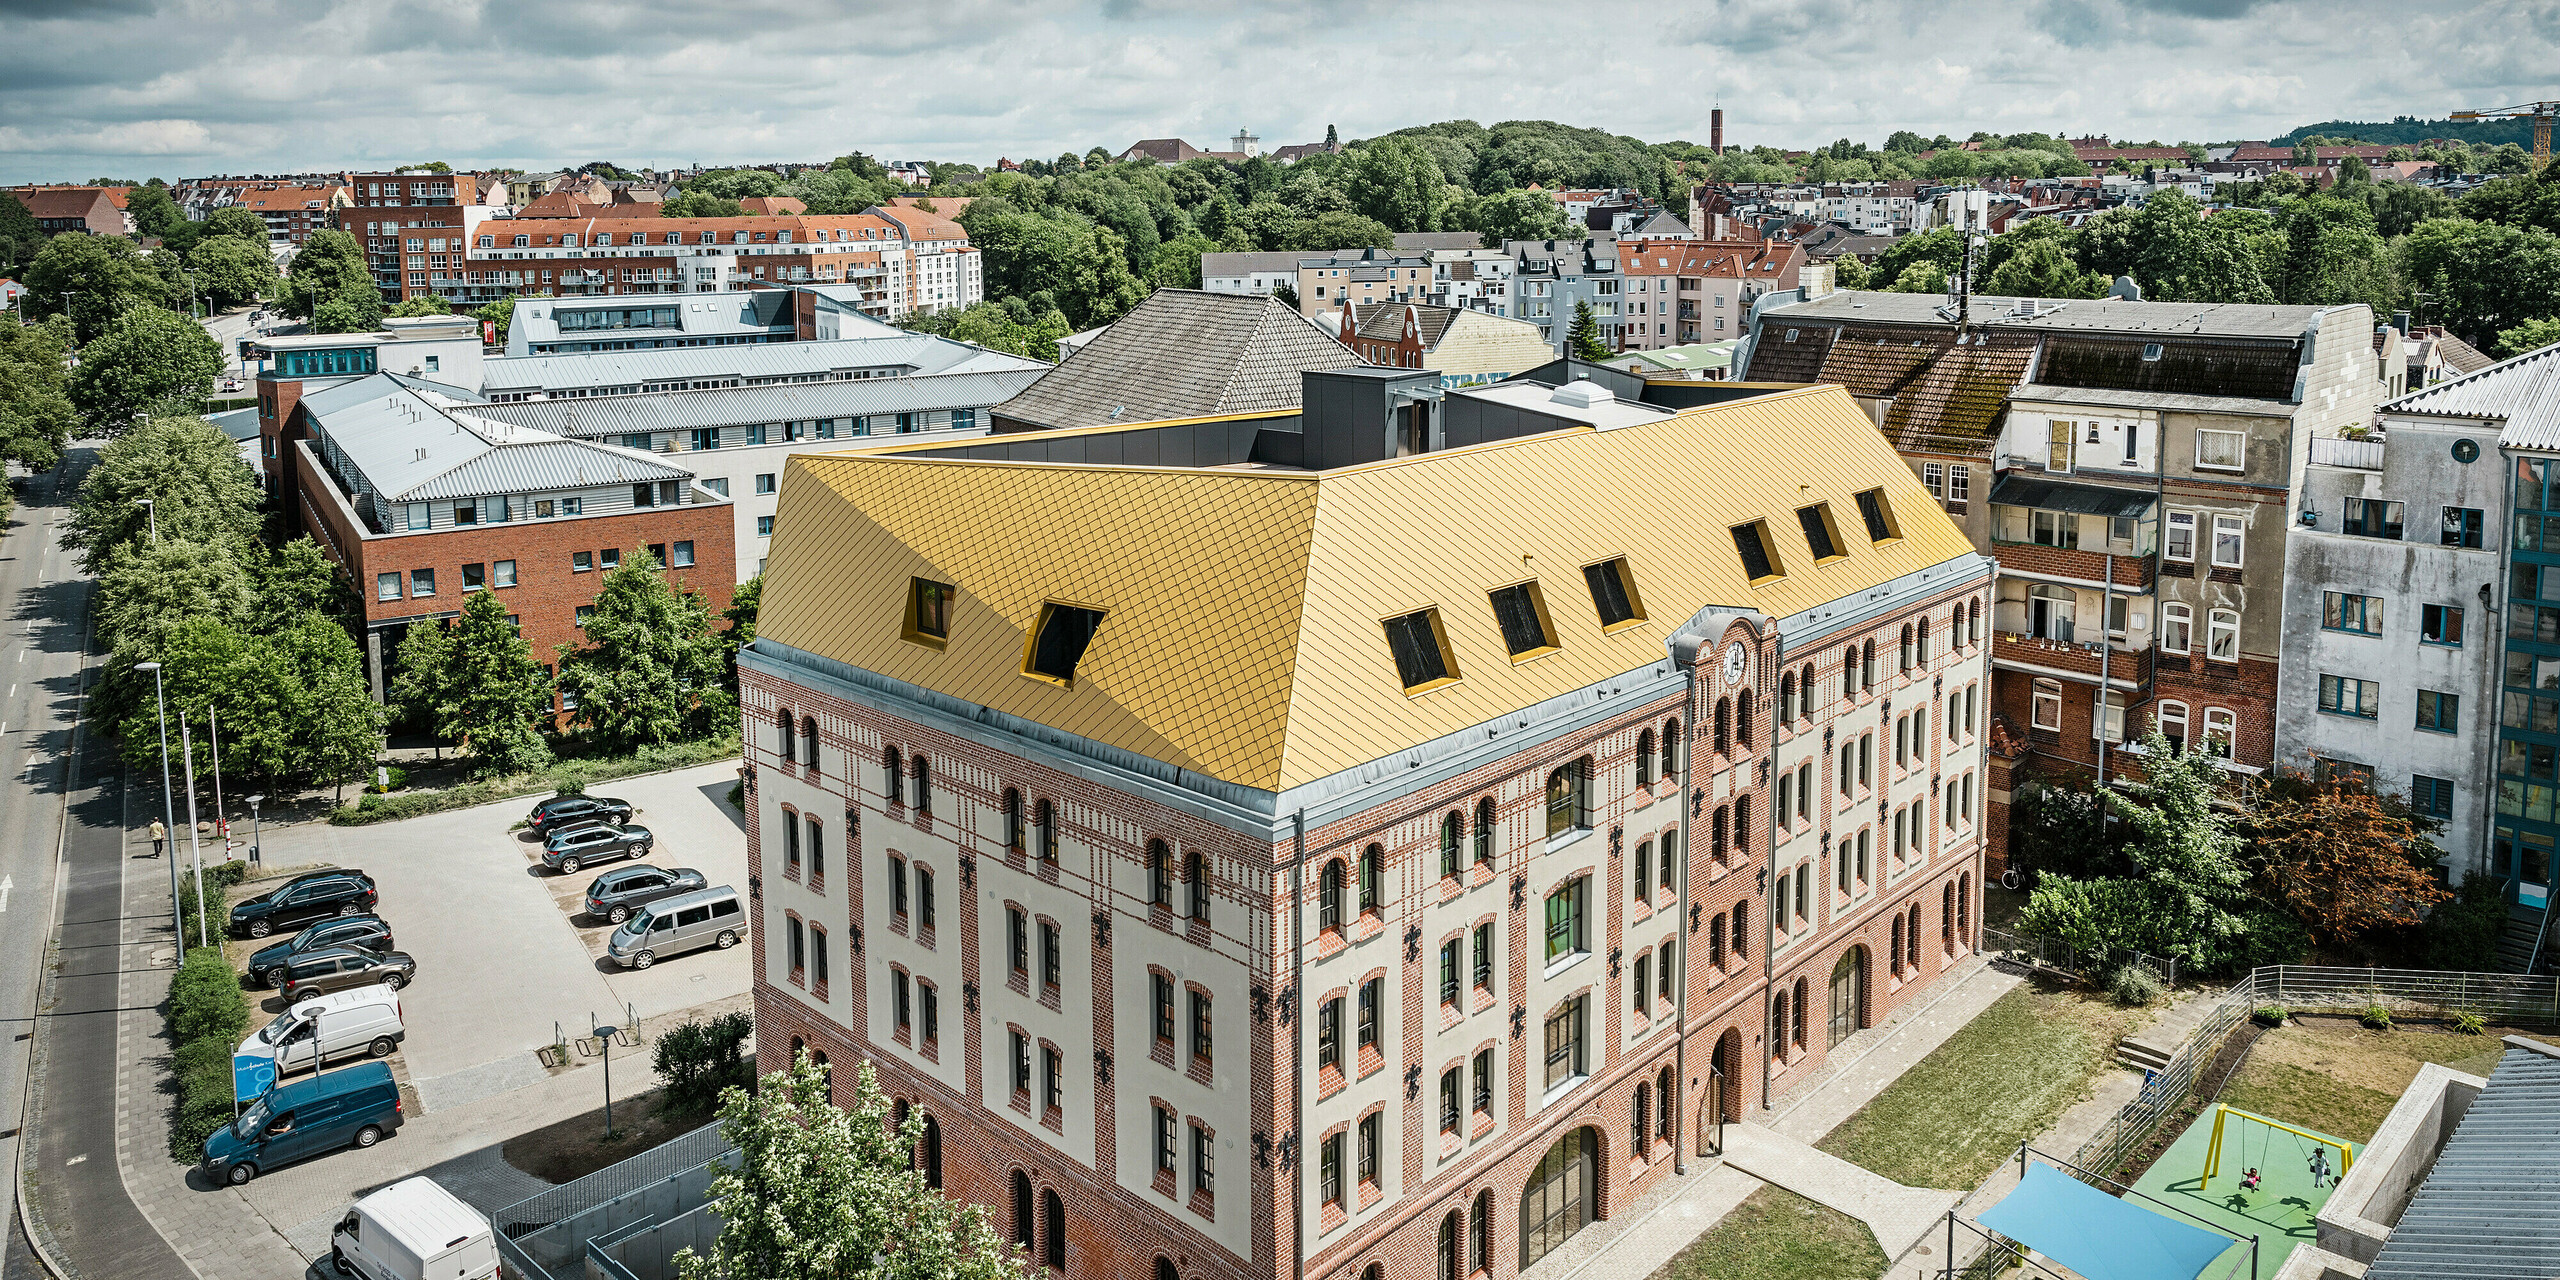 PREFA Dachrauten und Wandrauten 29 × 29 in Mayagold auf der Spitze des Studentenwohnheims in Kiel. Das Gebäude ist aus der Vogelperspektive mit einem Stadtpanorama im Hintergrund zu sehen. 